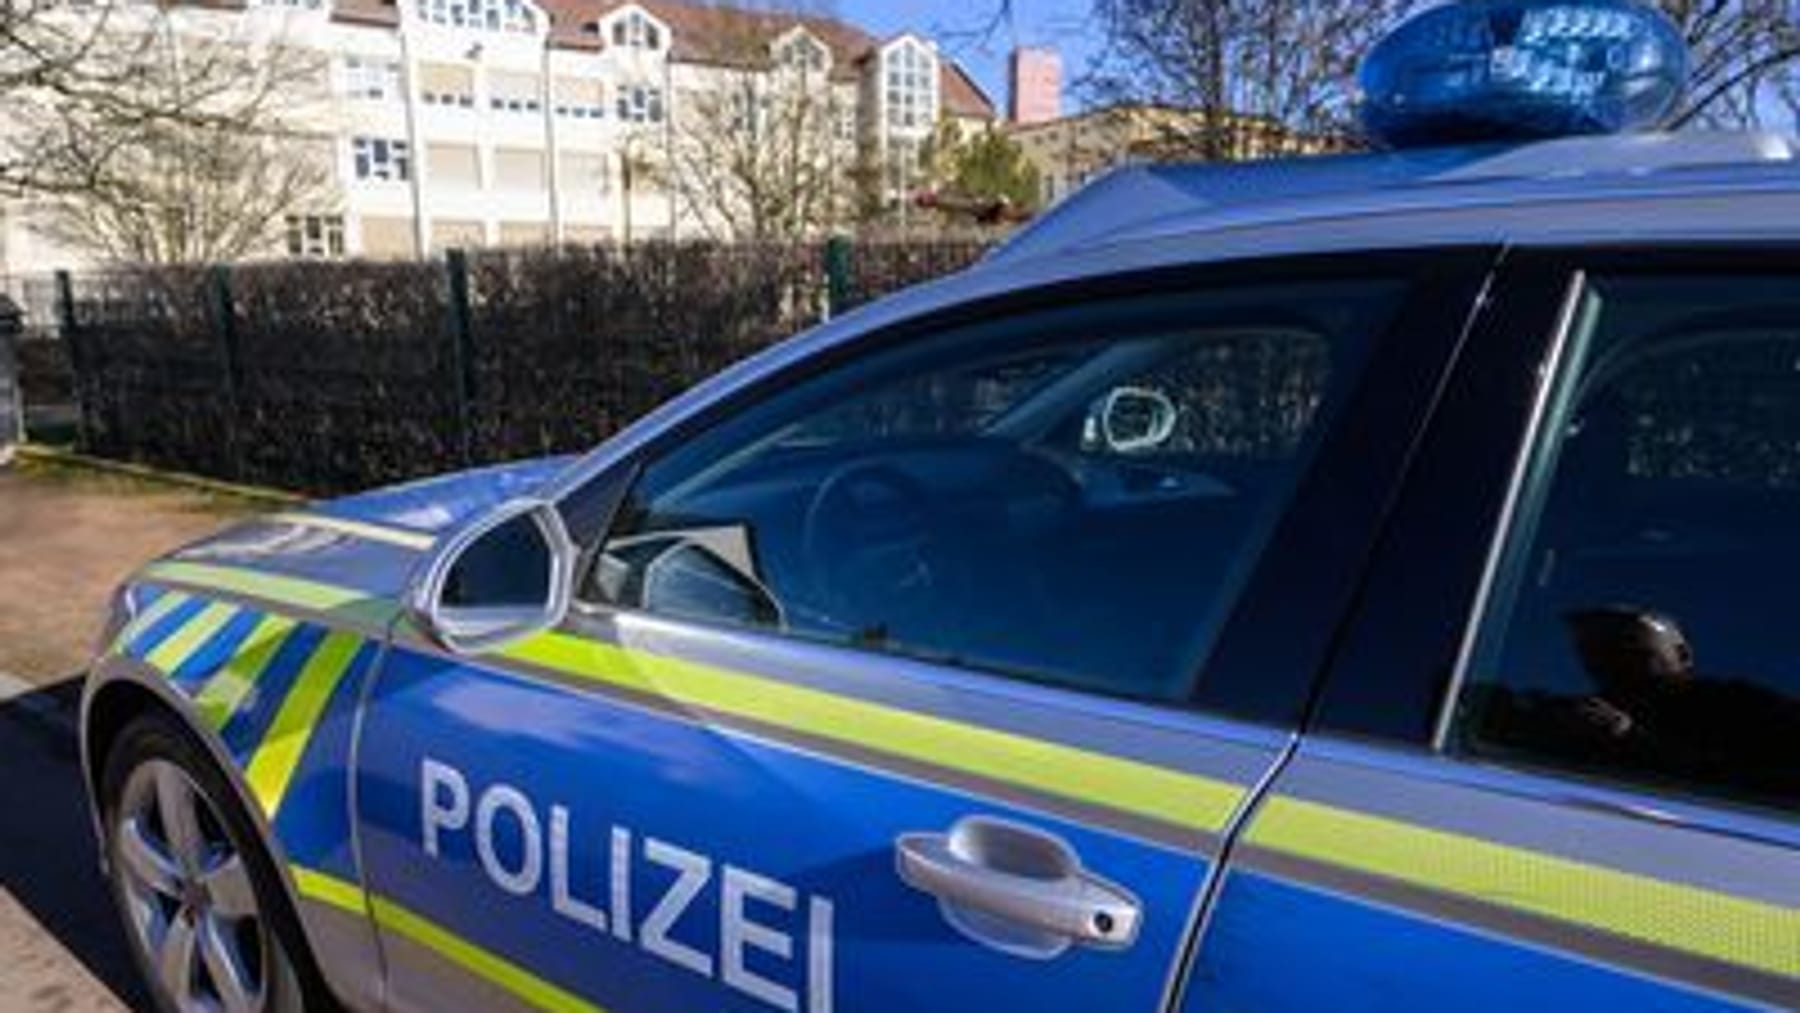 Angriff in München: Polizisten an Tankstelle von 